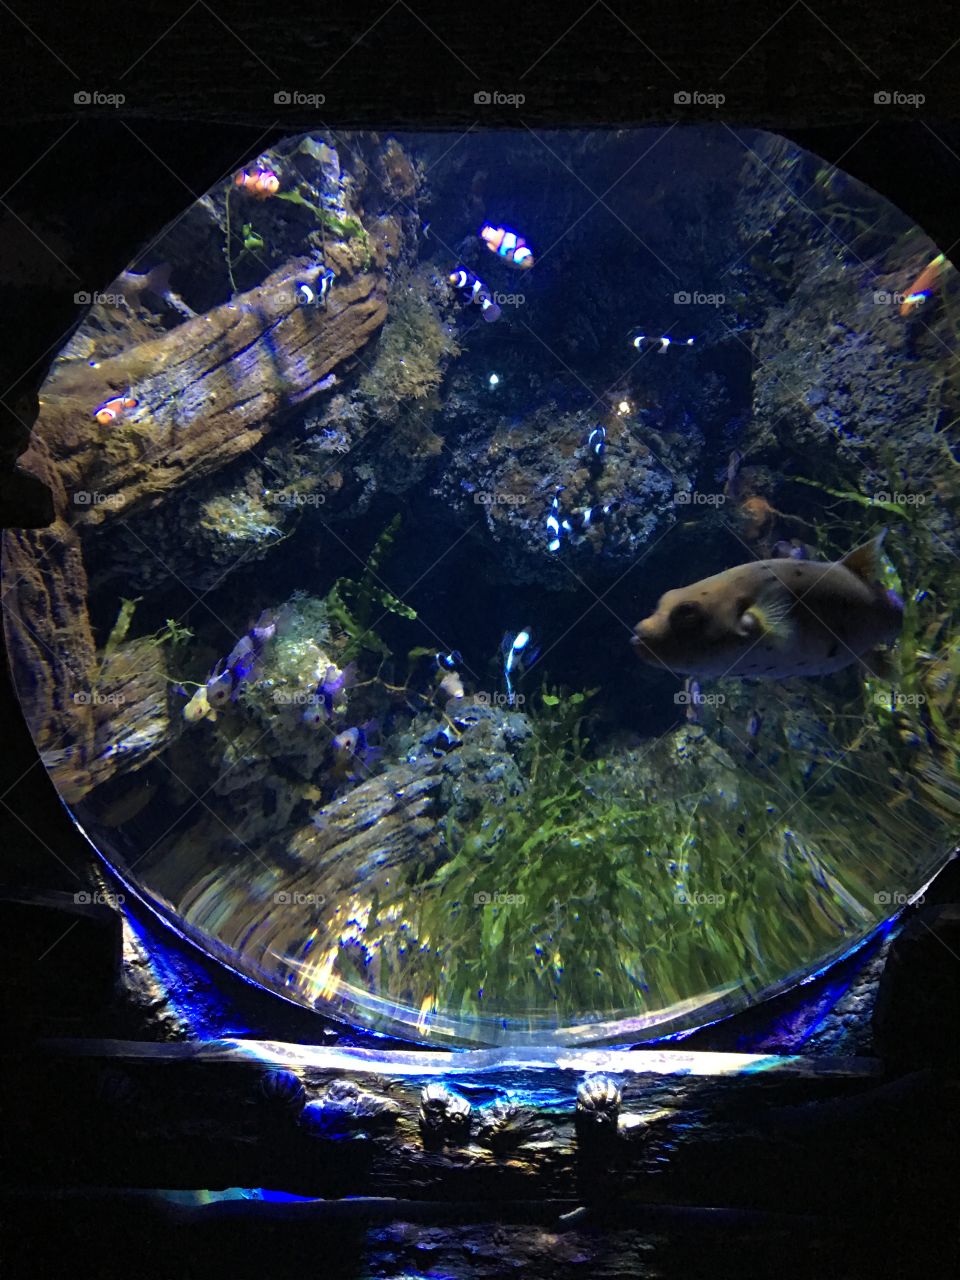 Aquarium in London 